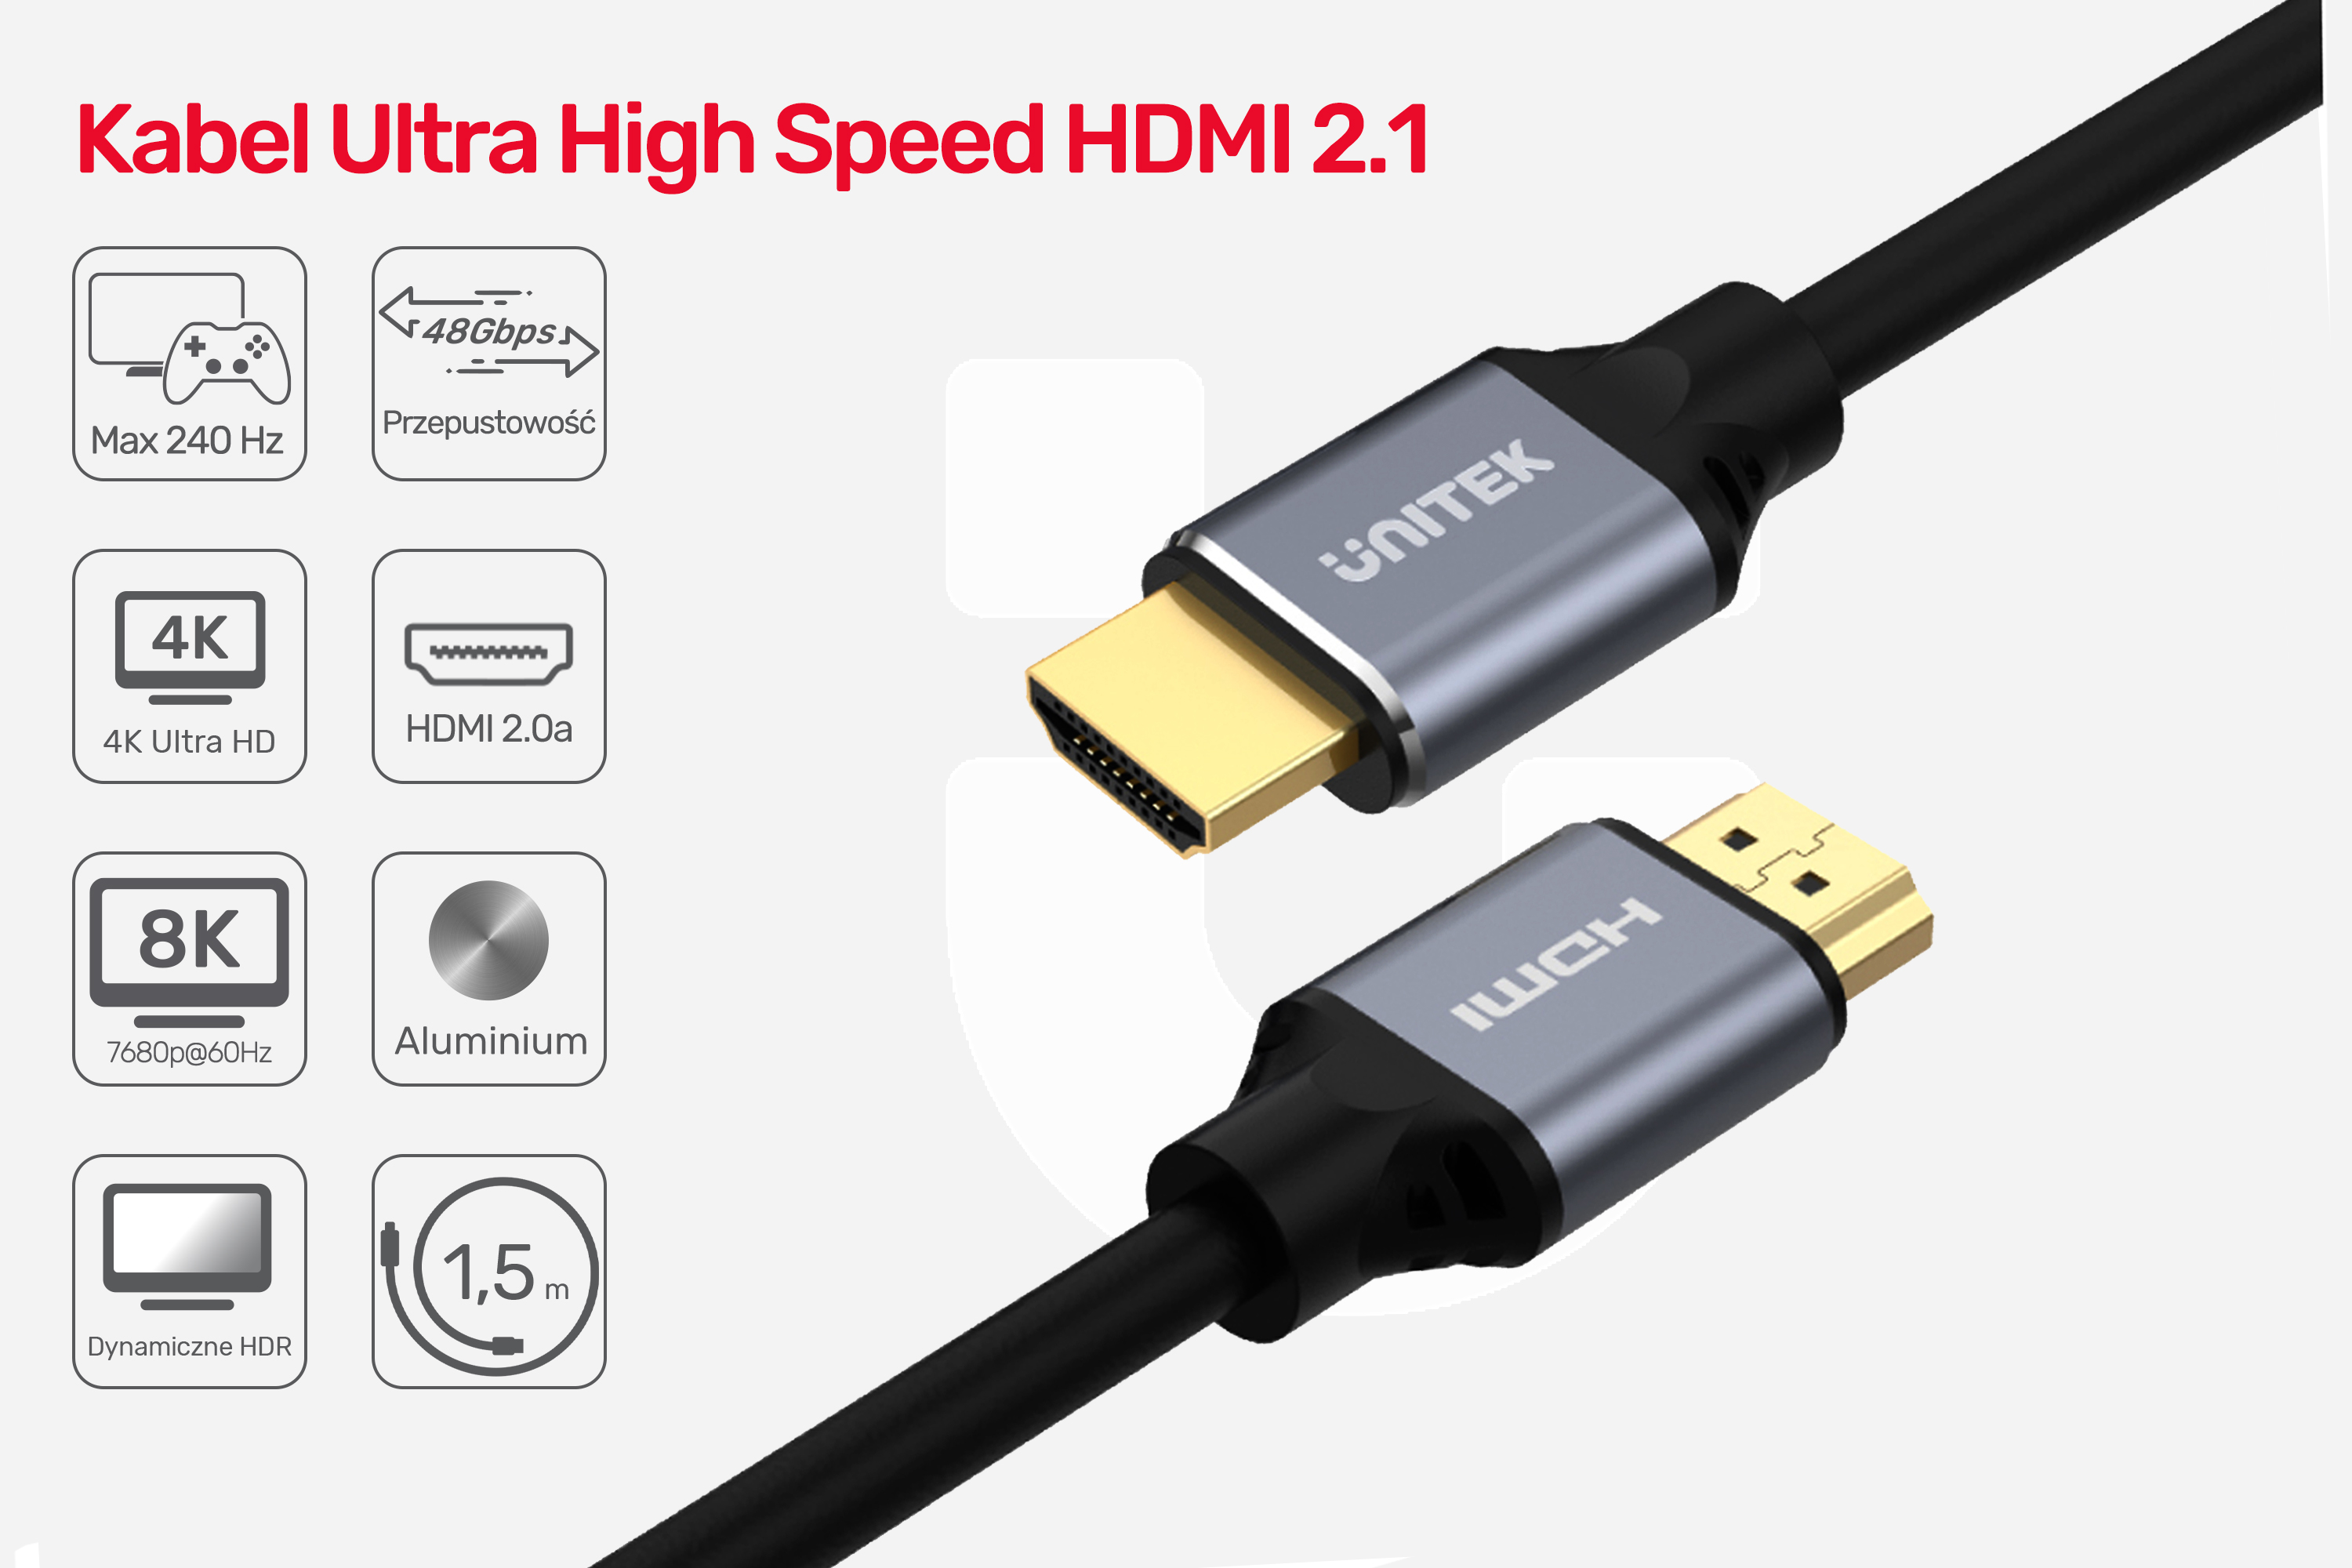 Kabel HDMI2.1 specyfikacja